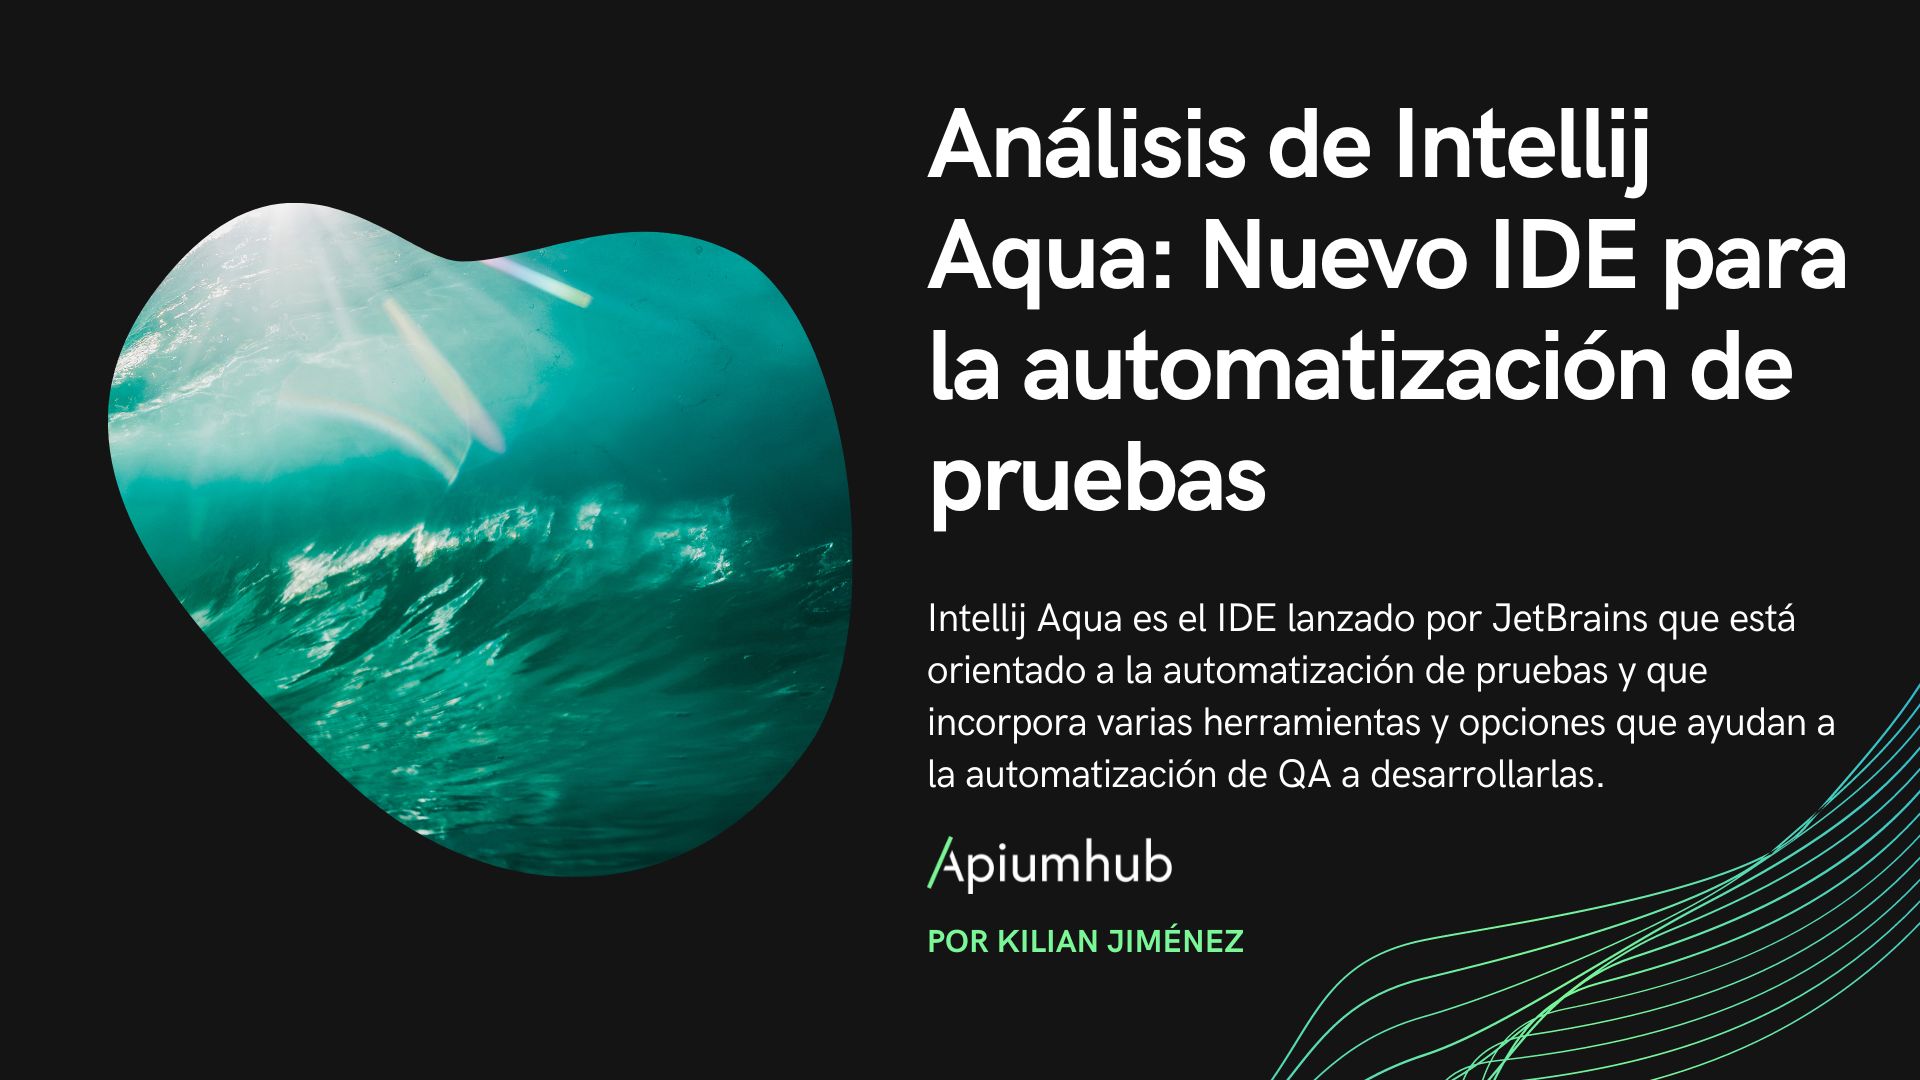 Análisis de intellij Aqua: nueva IDE para automatización de tests